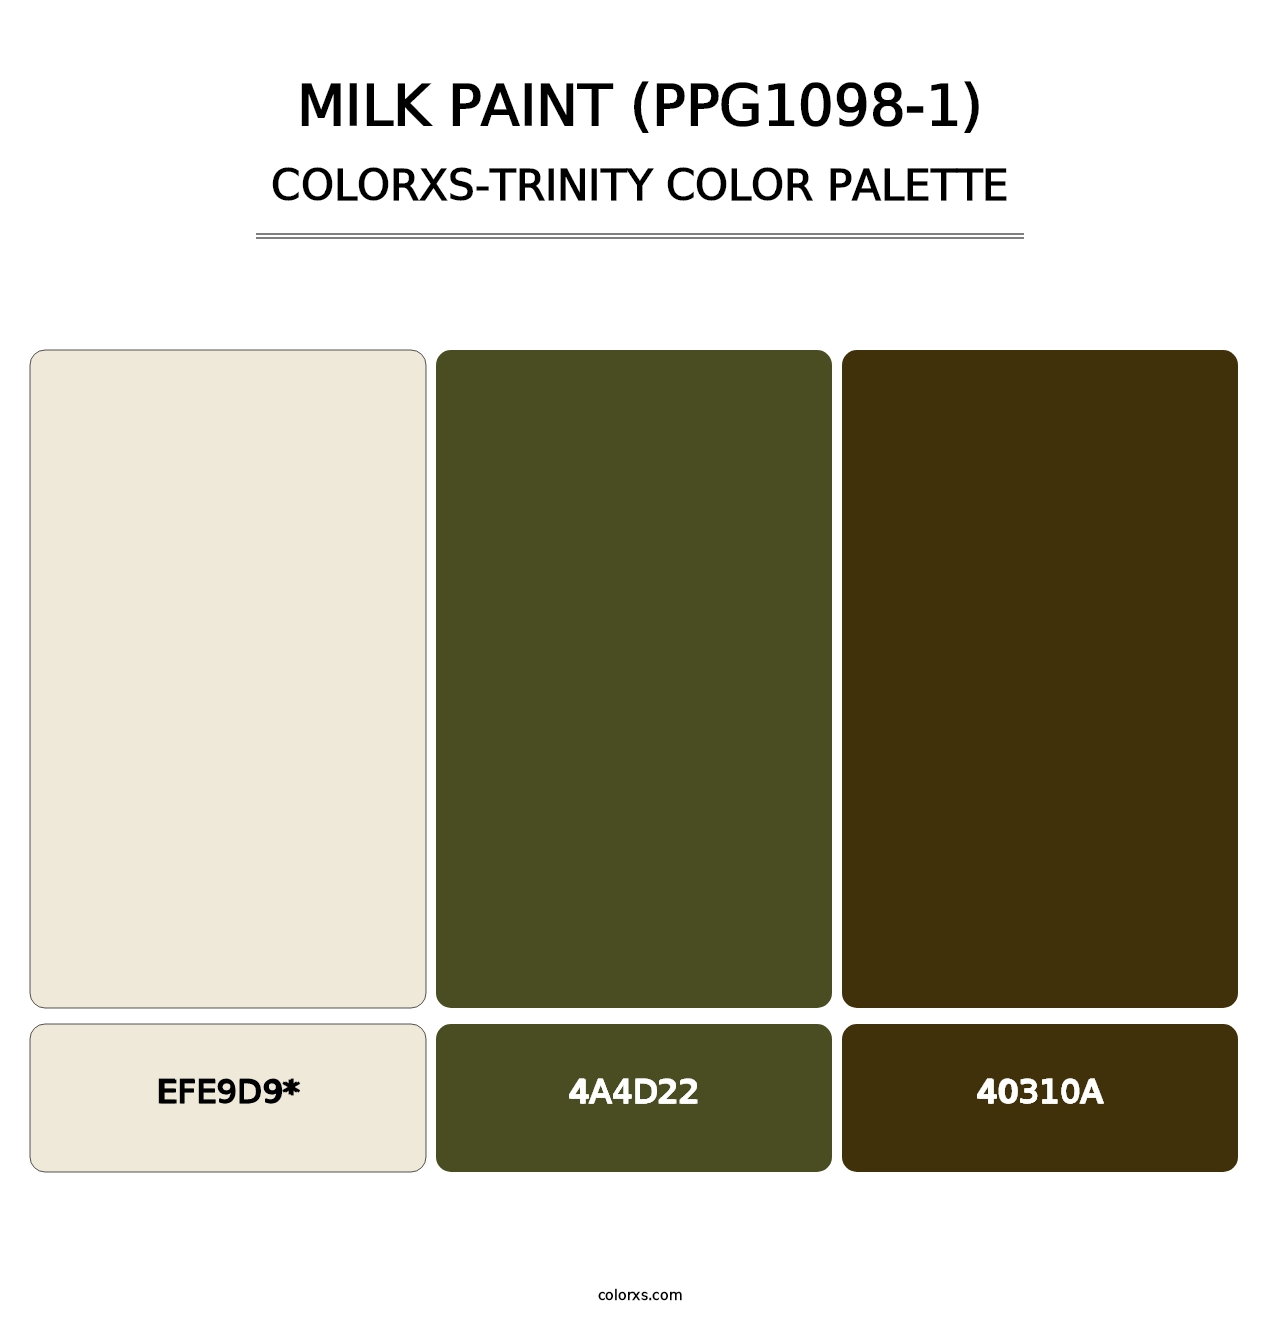 Milk Paint (PPG1098-1) - Colorxs Trinity Palette